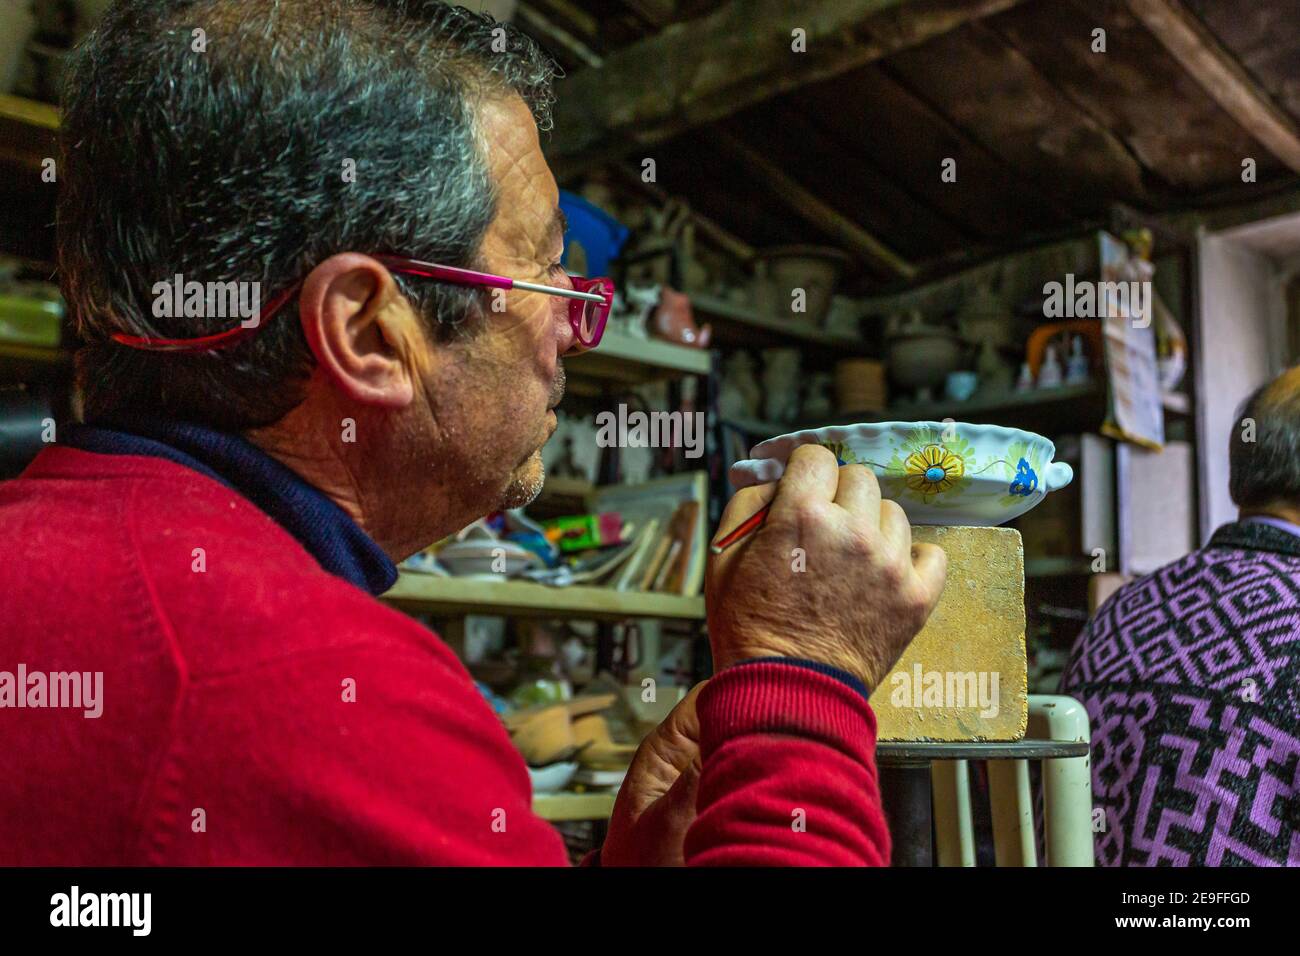 Homme travaillant dans son atelier de poterie, peignant sur une tasse d'argile. Peinture céramique Banque D'Images